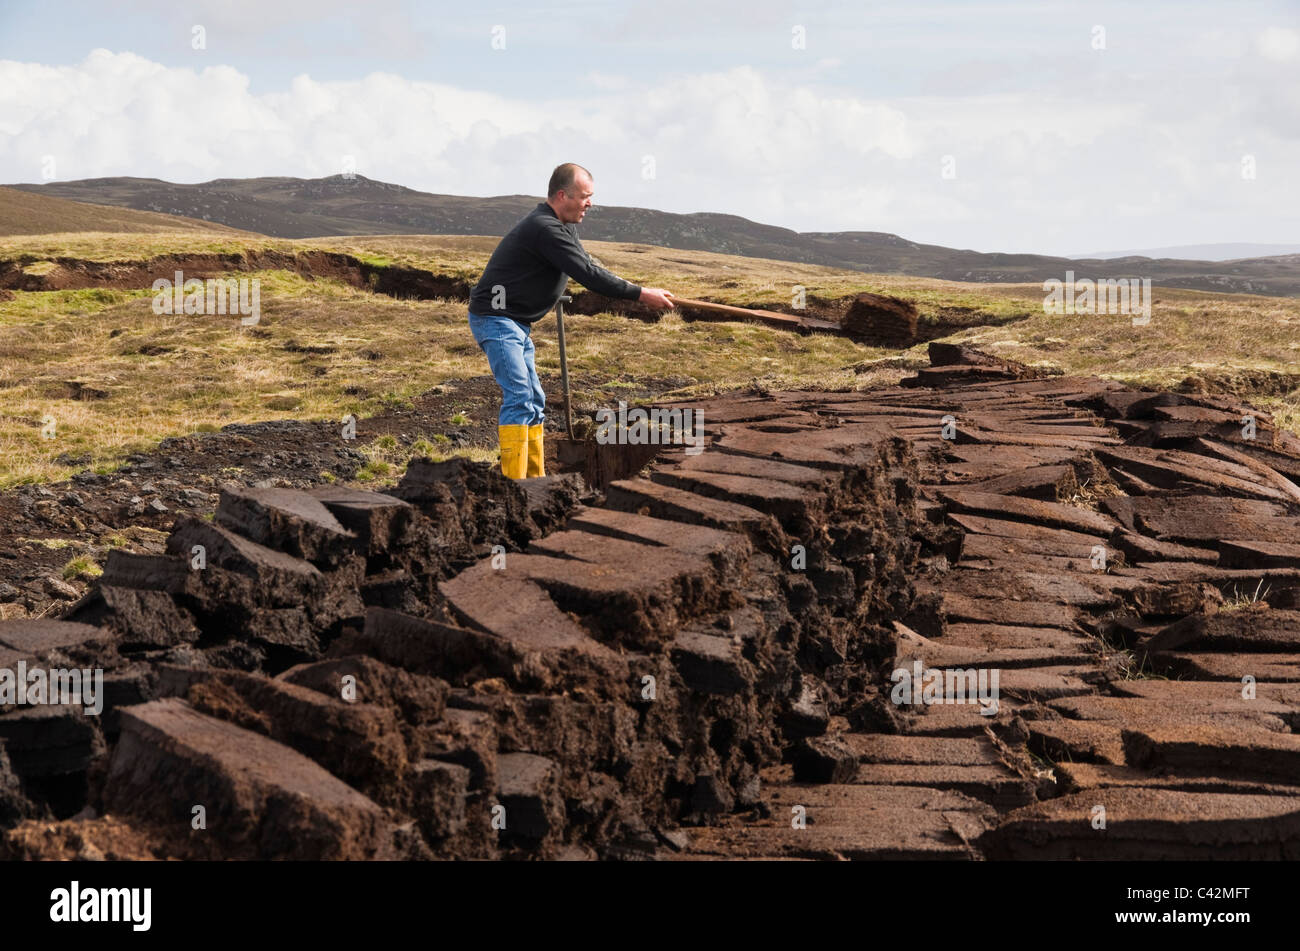 Coupe homme empilés pour le séchage des blocs de tourbe comme combustible traditionnel. Les Îles Shetland, Écosse, Royaume-Uni, Europe. Banque D'Images